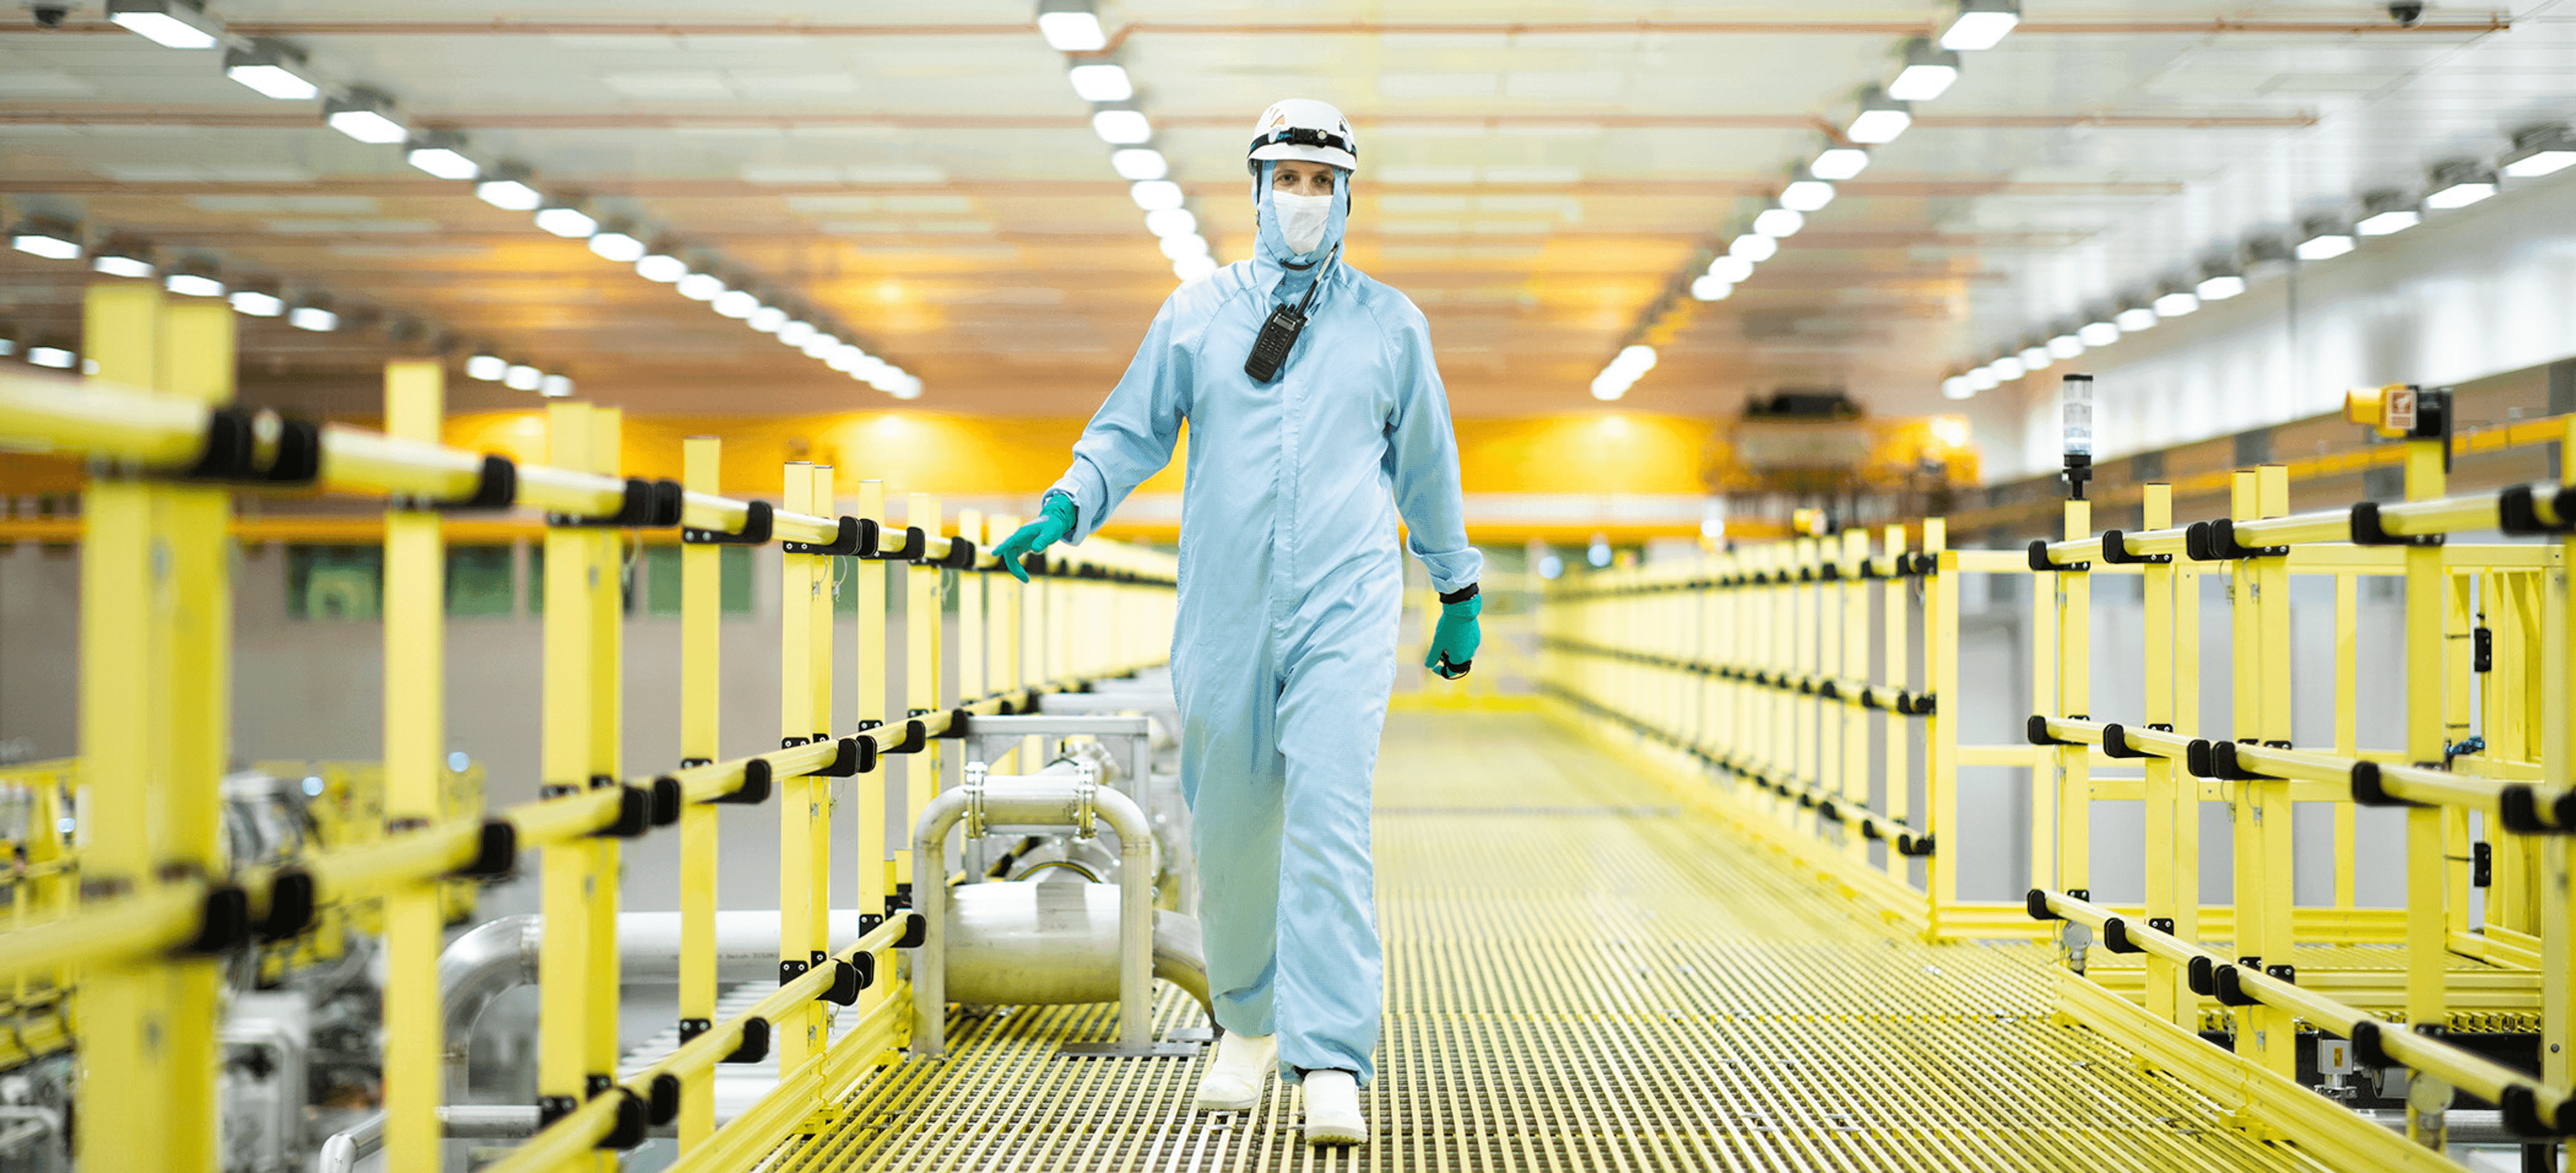 A man walking in a ramp in biohazard suit